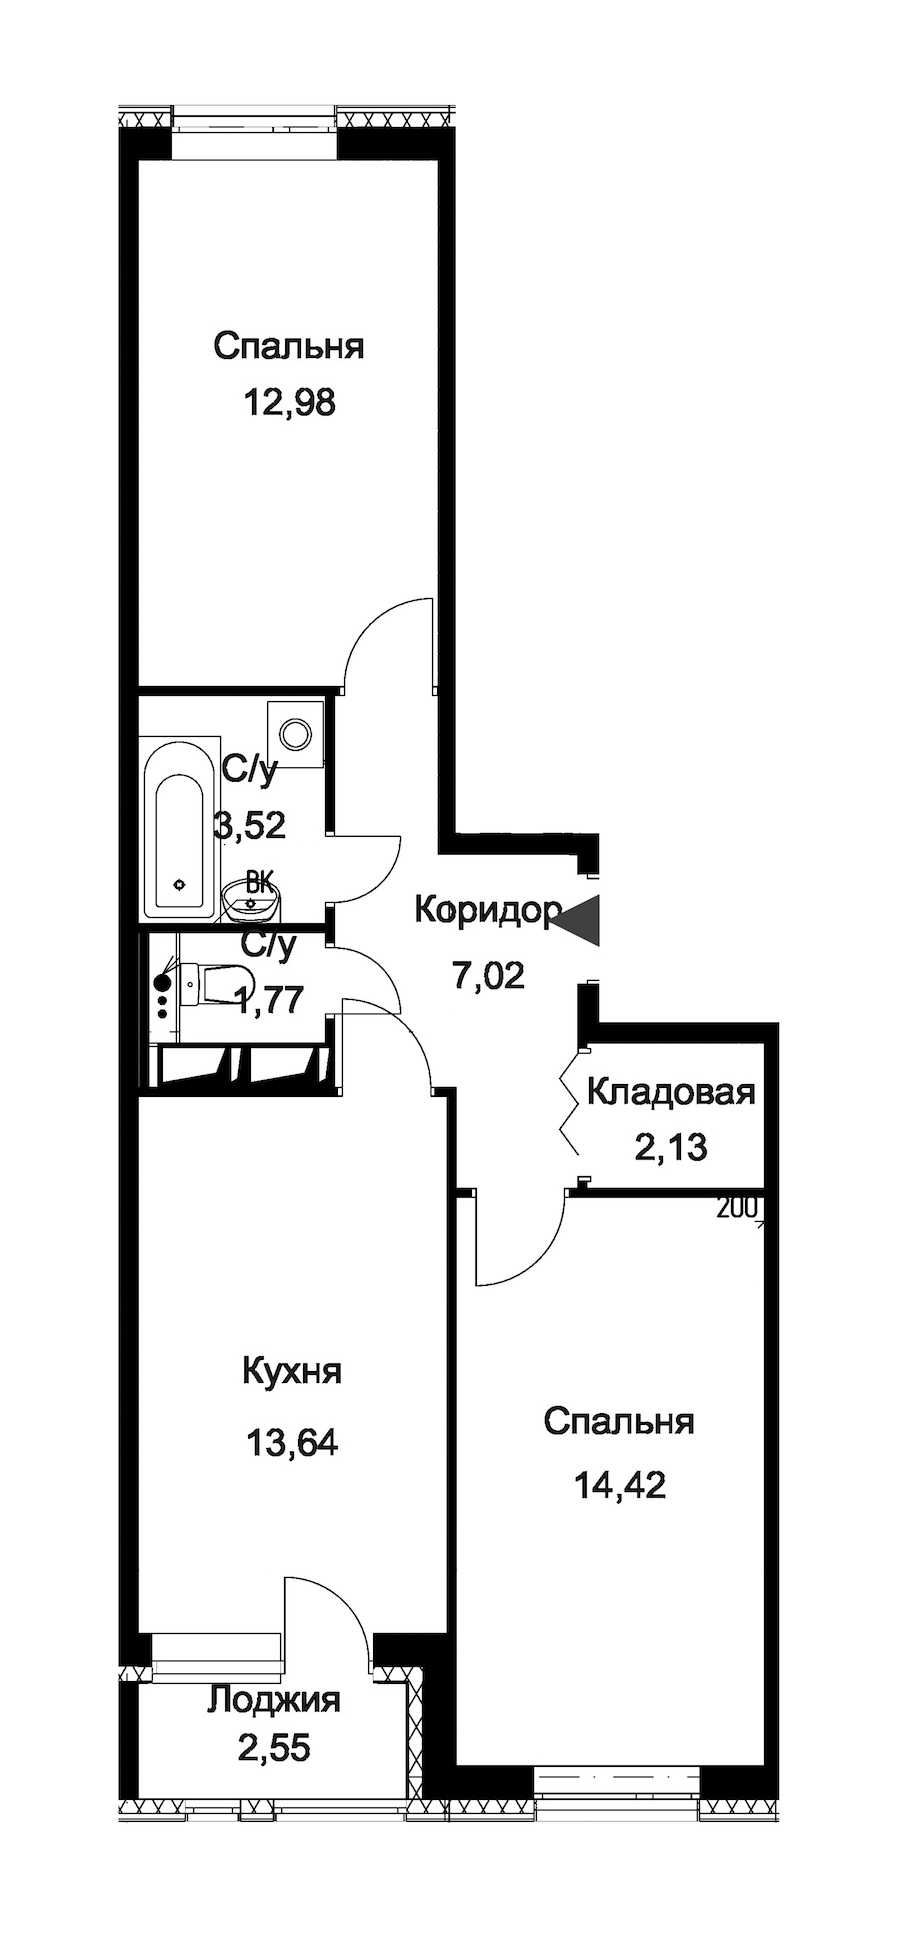 Двухкомнатная квартира в : площадь 56.76 м2 , этаж: 1 – купить в Санкт-Петербурге